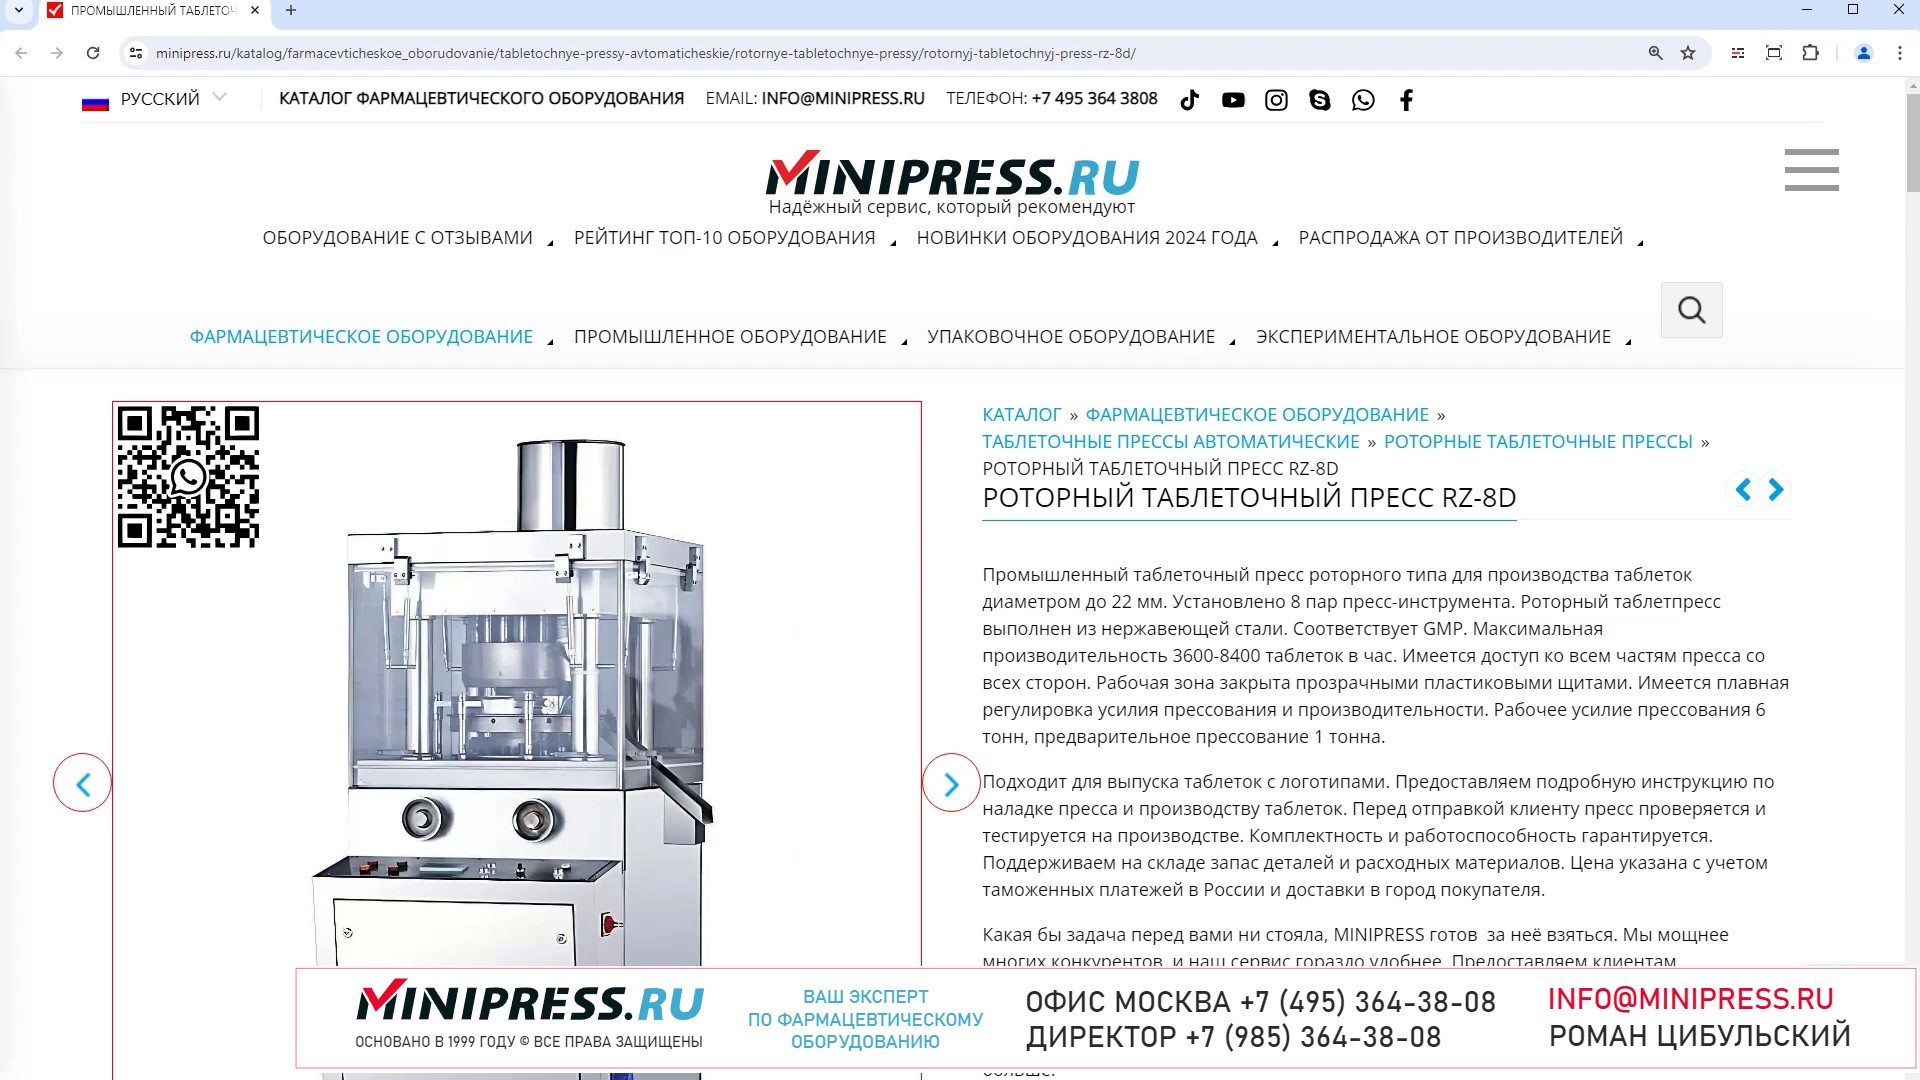 Minipress.ru Роторный таблеточный пресс RZ-8D